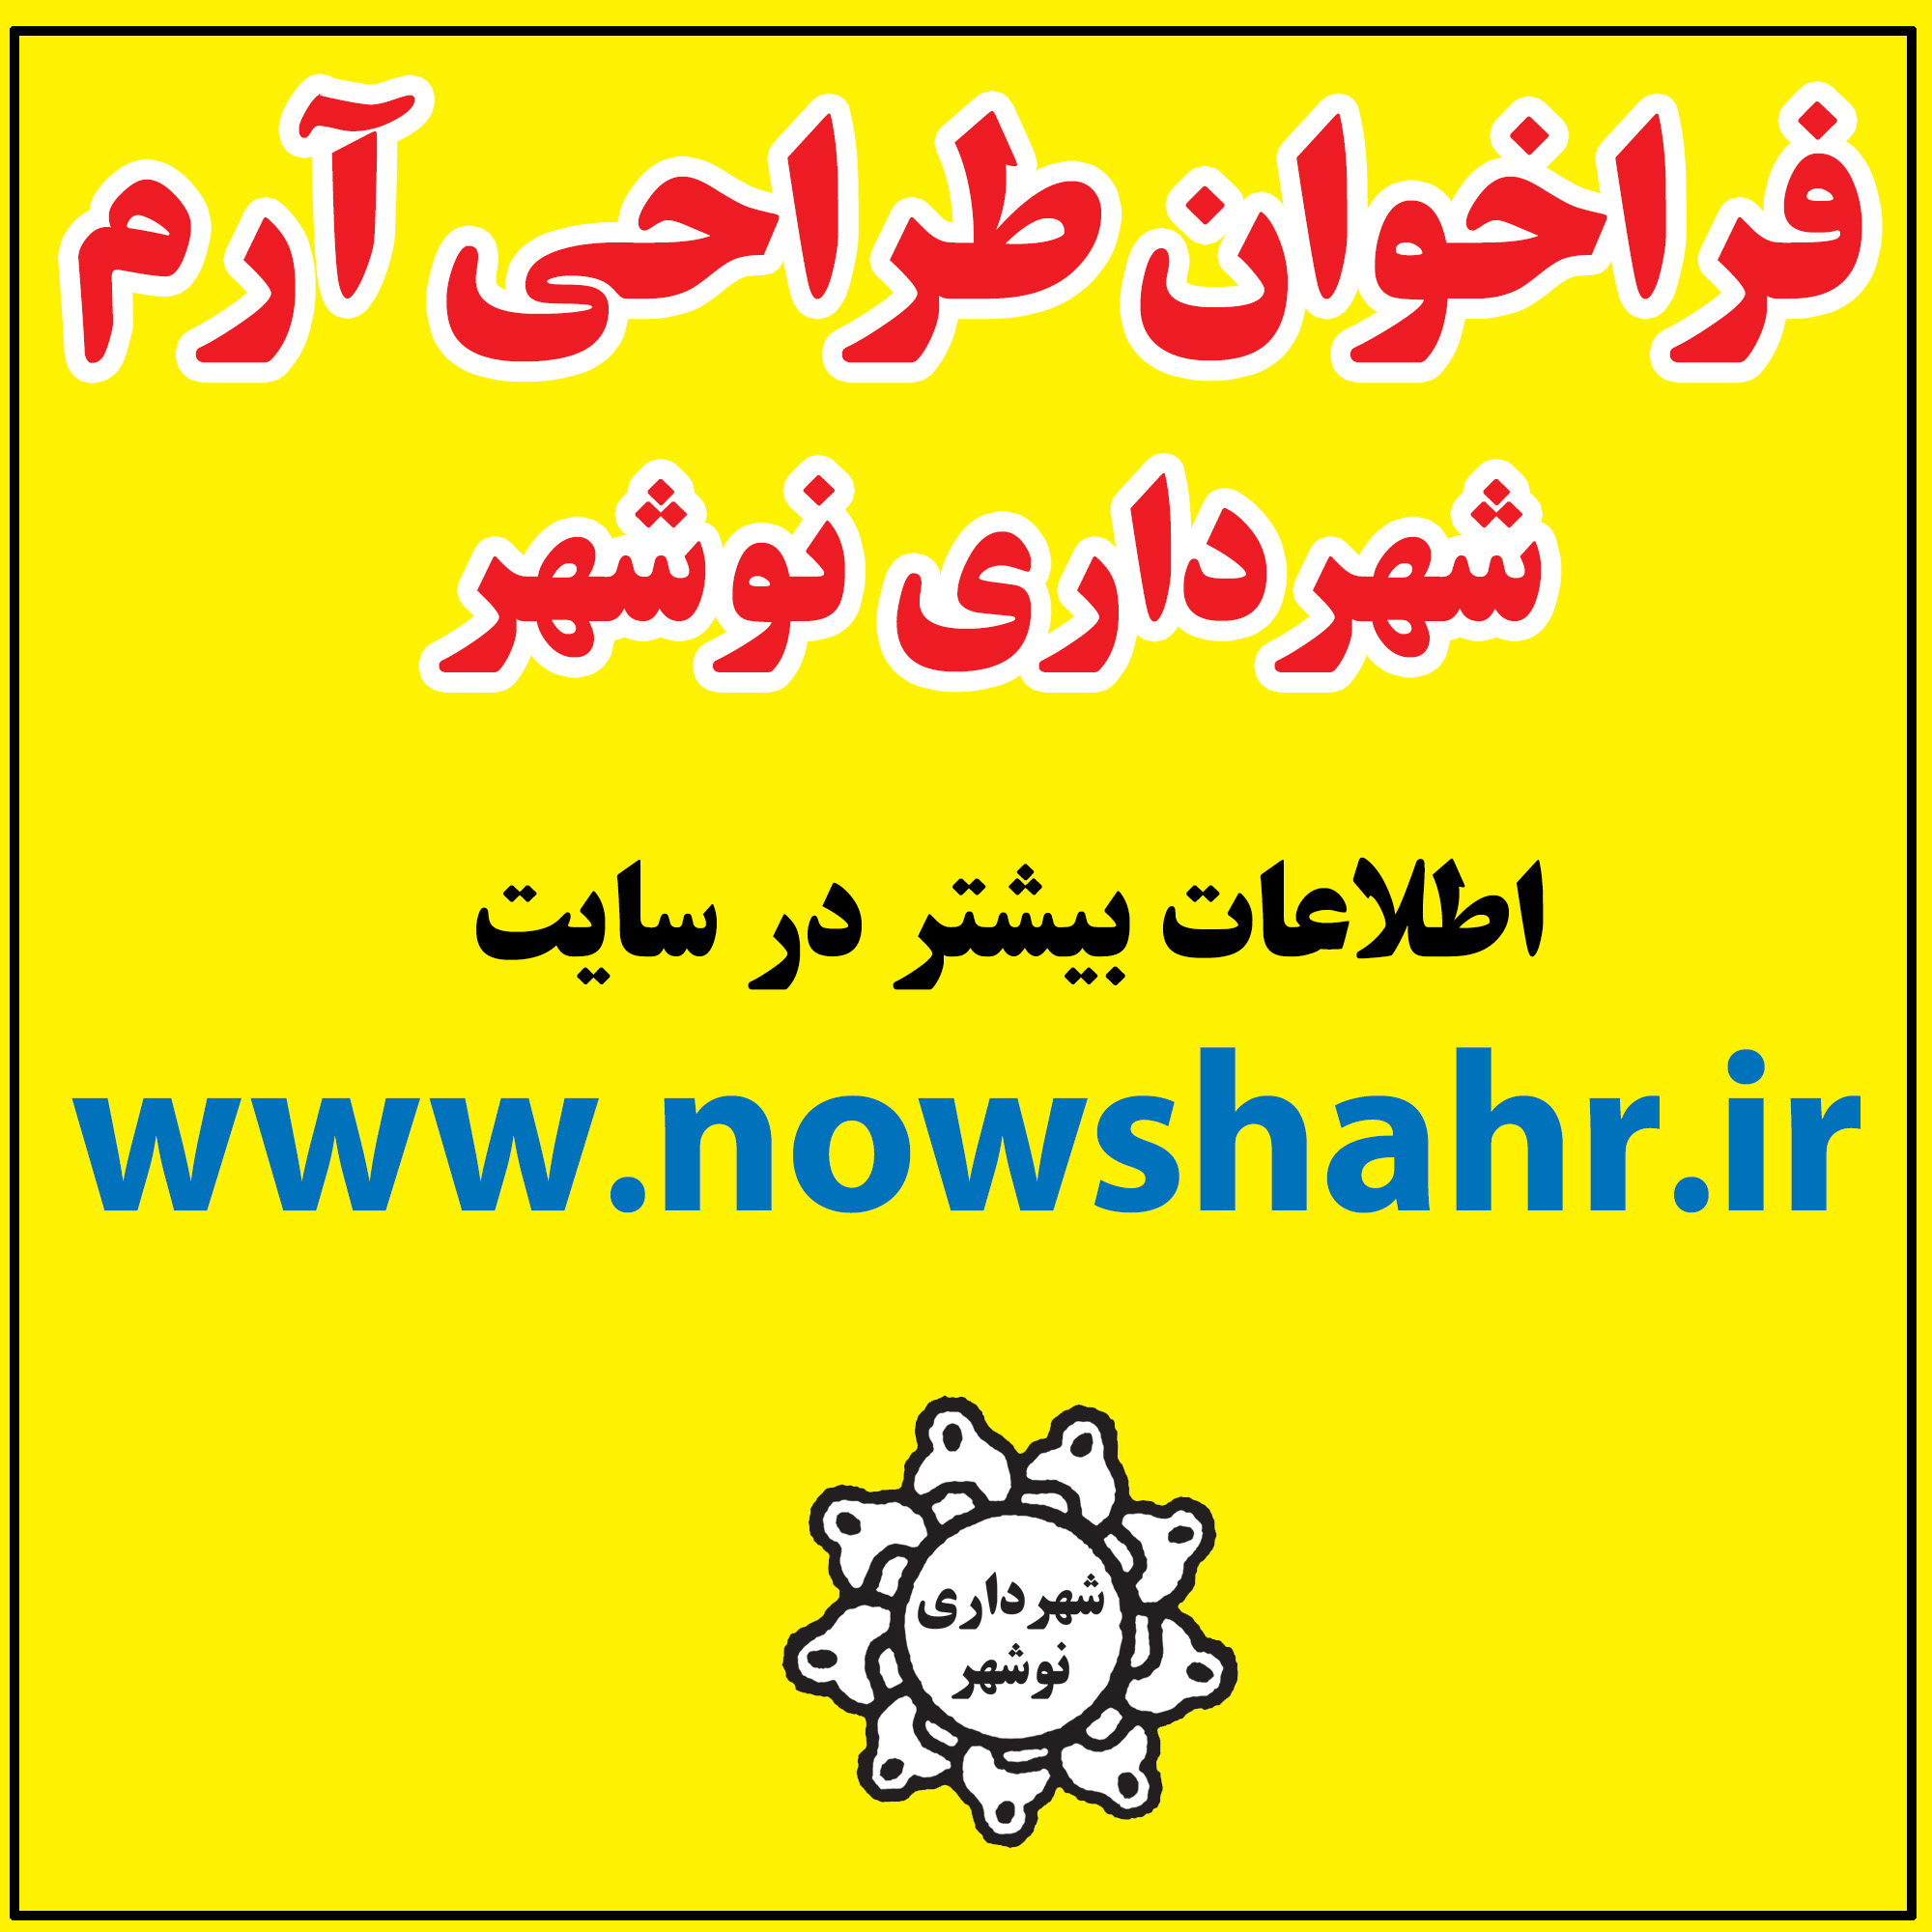 فراخوان طراحی آرم شهرداری نوشهر